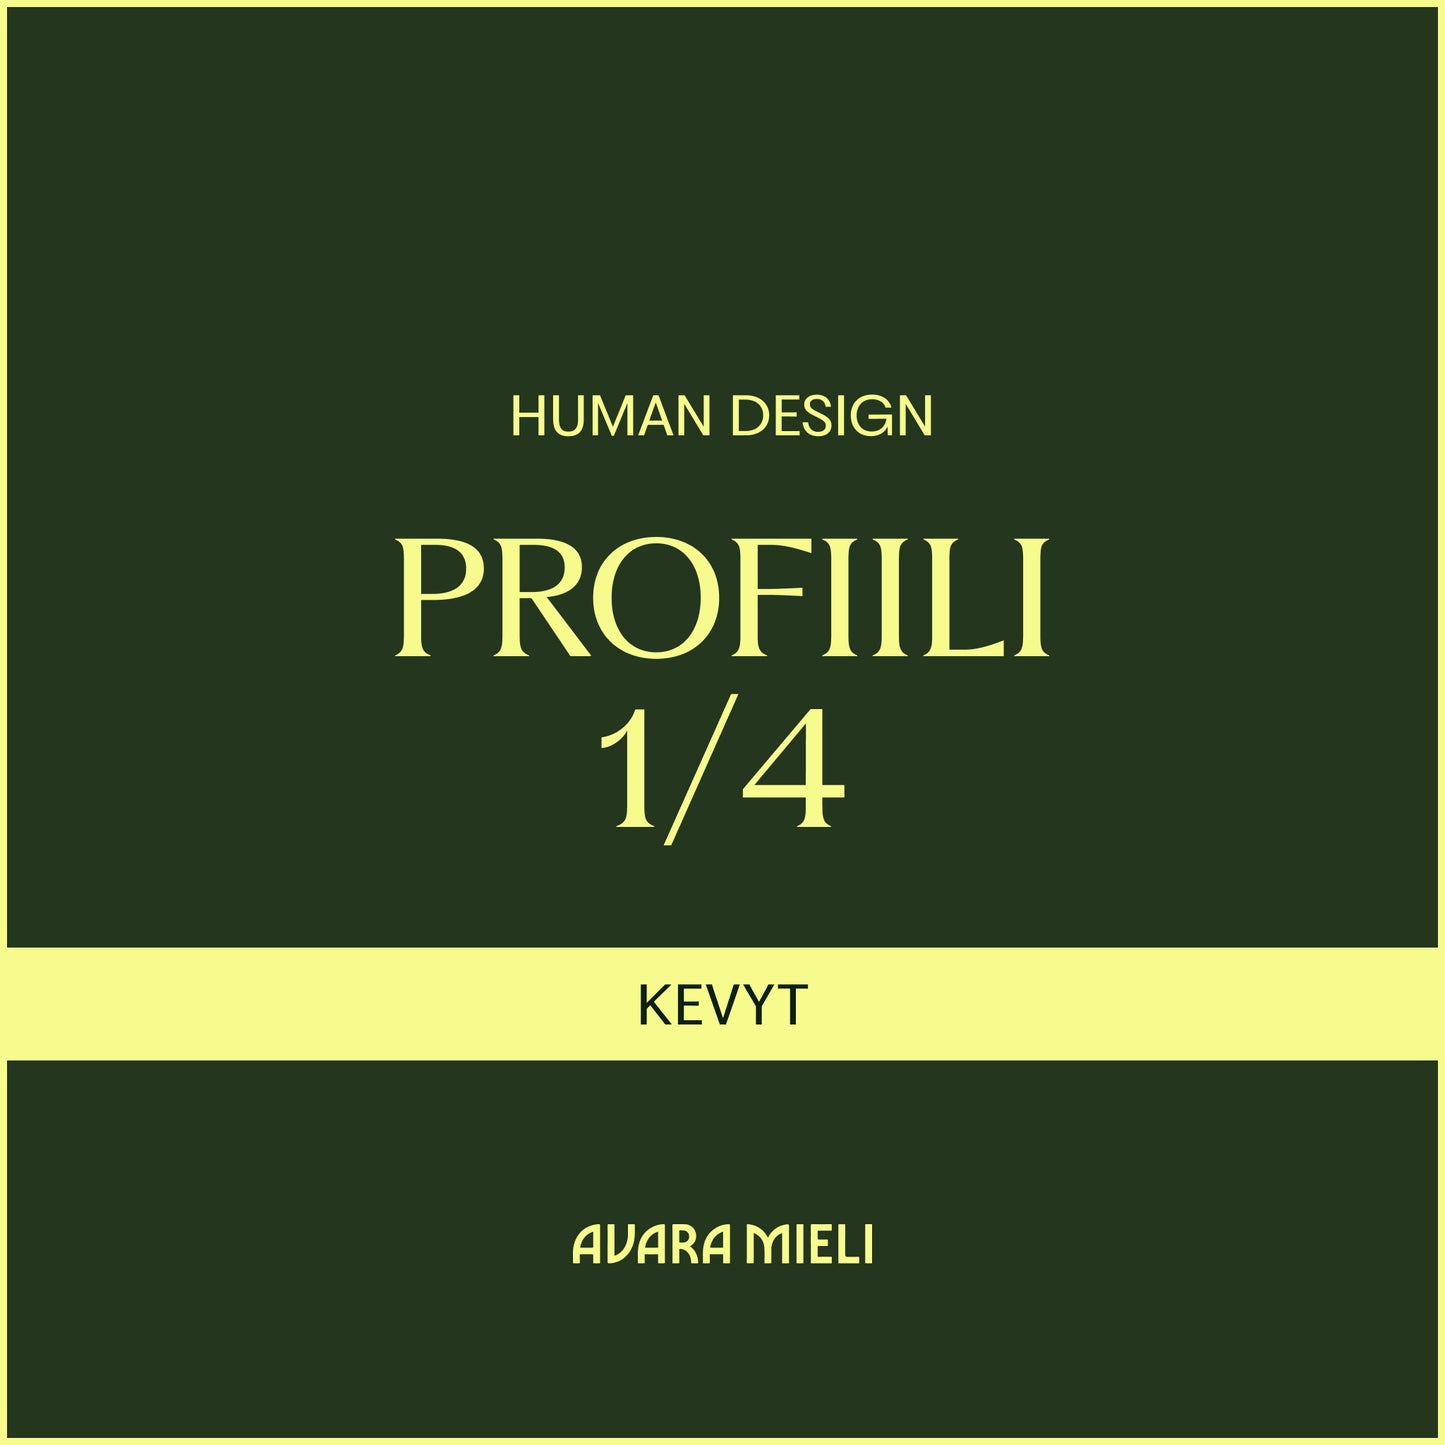 Human Design Profiili 1/4